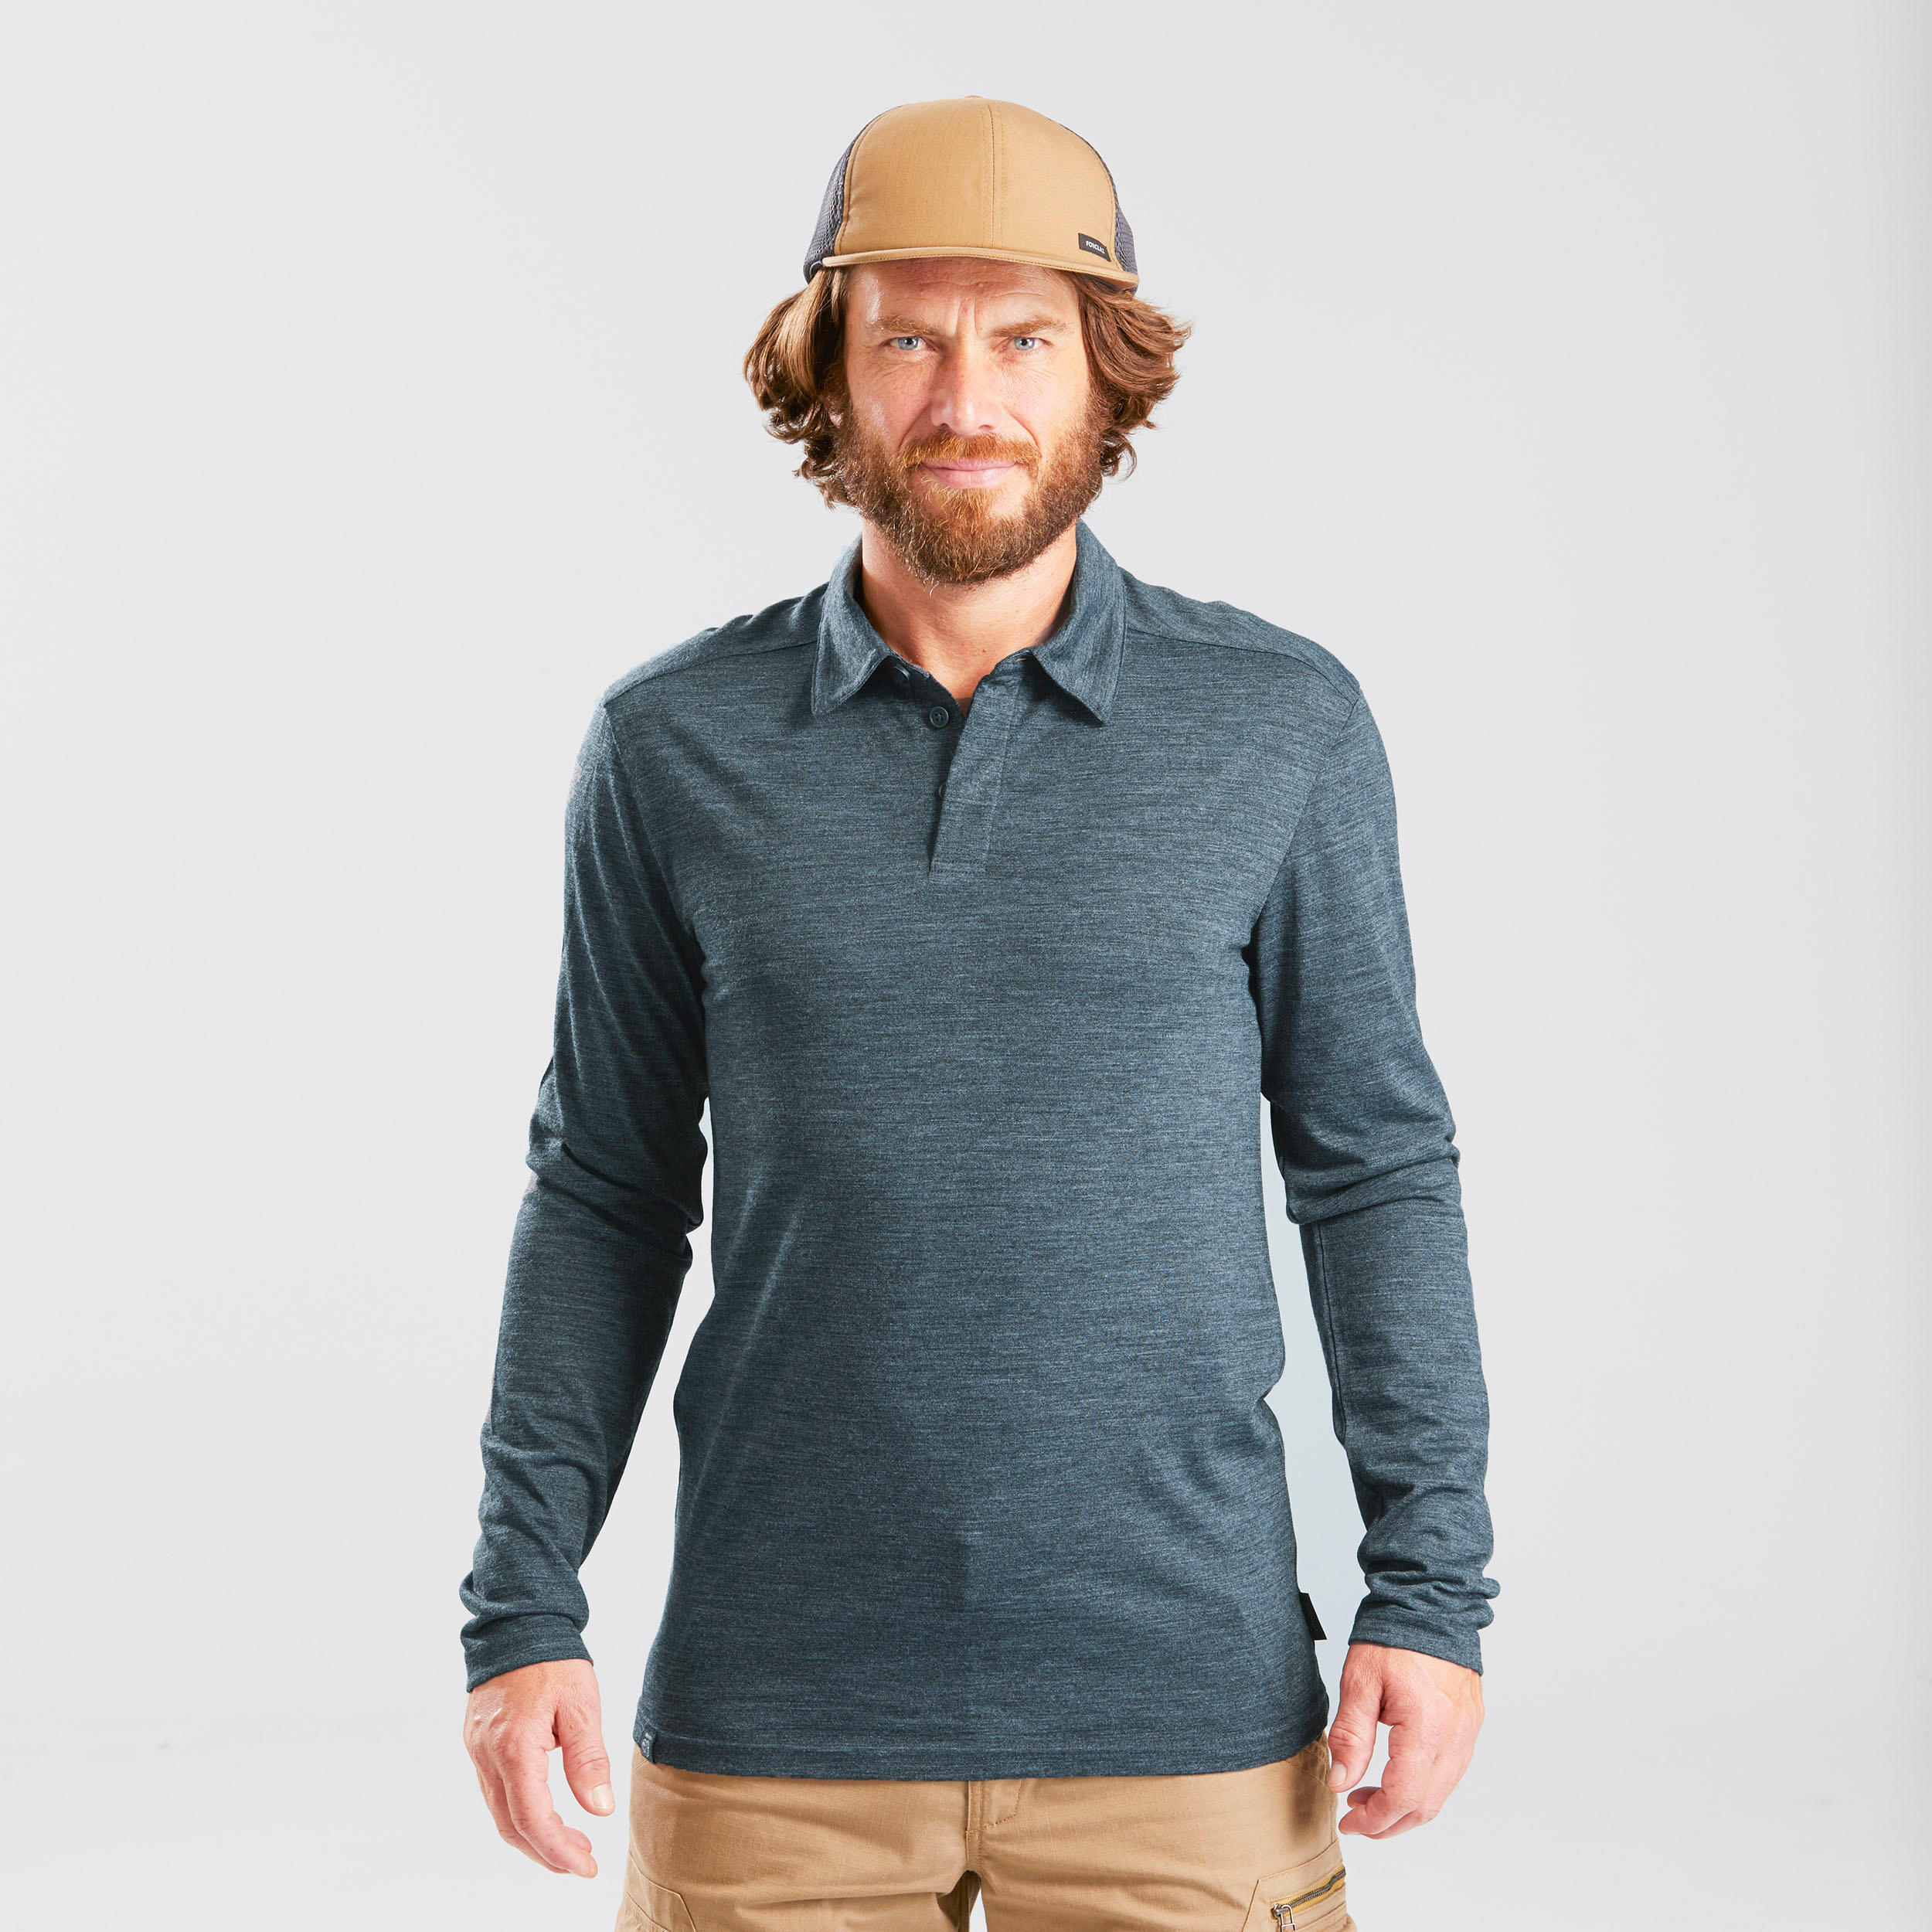 Men’s Long-sleeved Travel Trekking Merino Wool Polo Shirt - TRAVEL 500 Blue 4/10